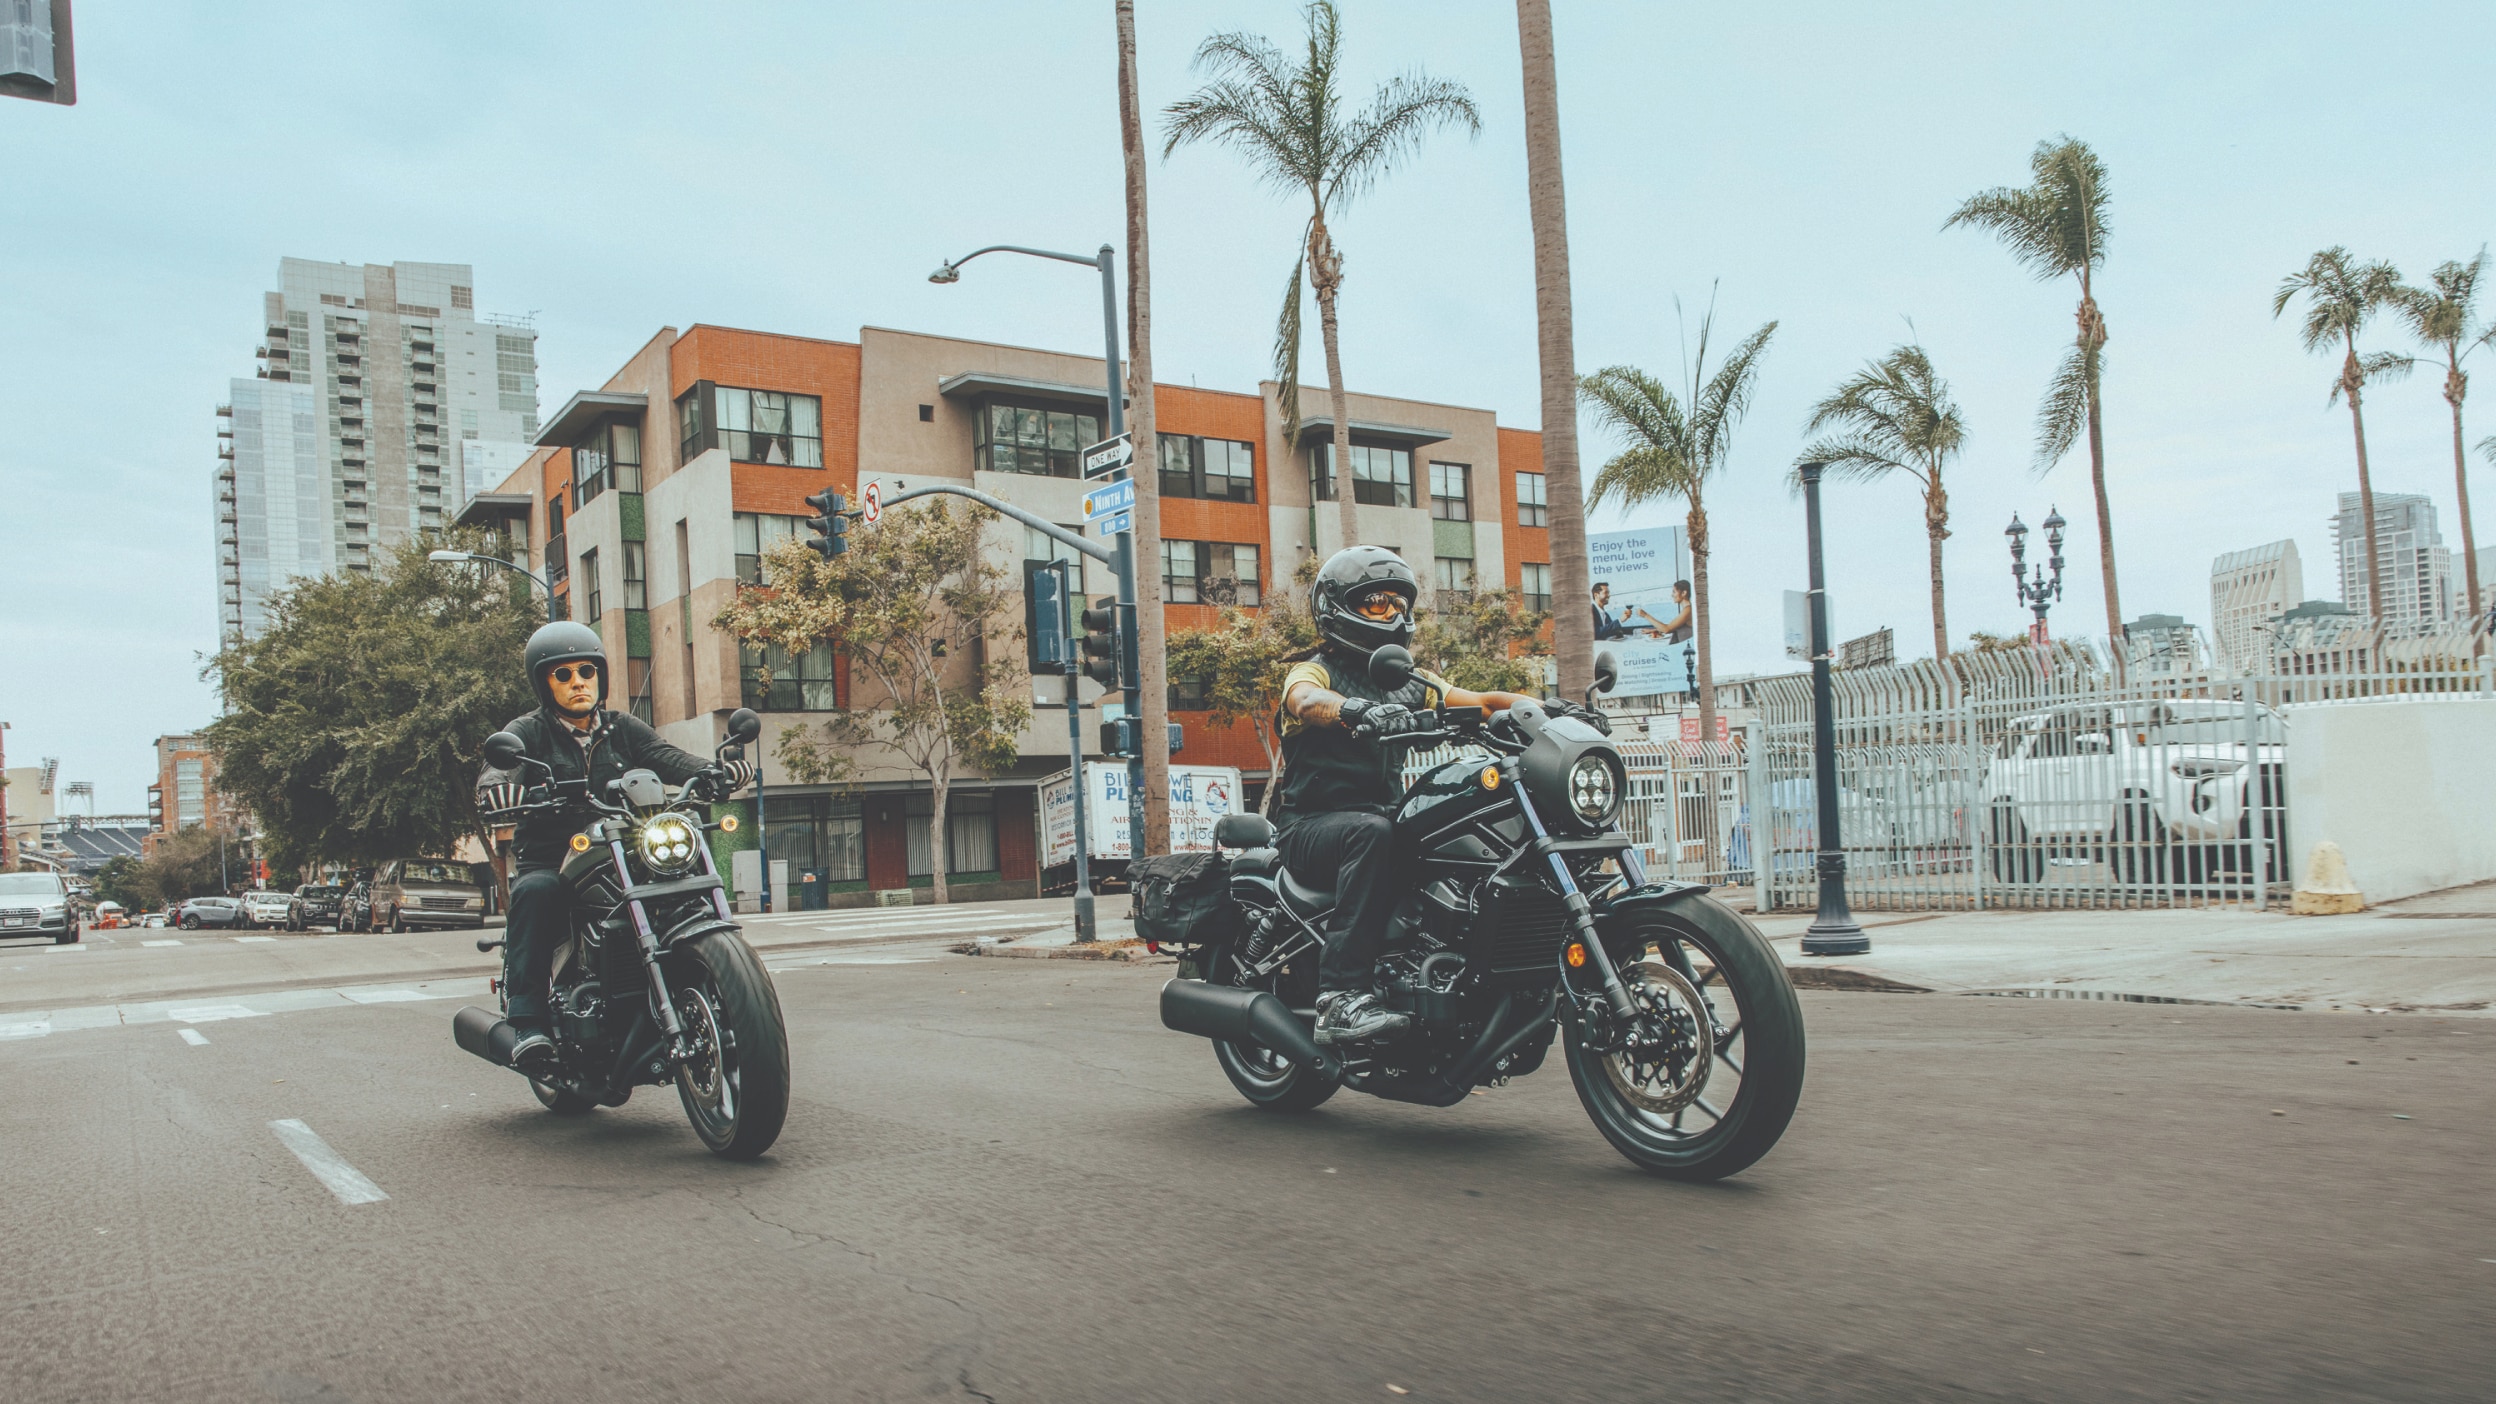 Deux coureurs sur Honda Cruiser Motorcycles en milieu urbain avec des palmiers en arrière-plan